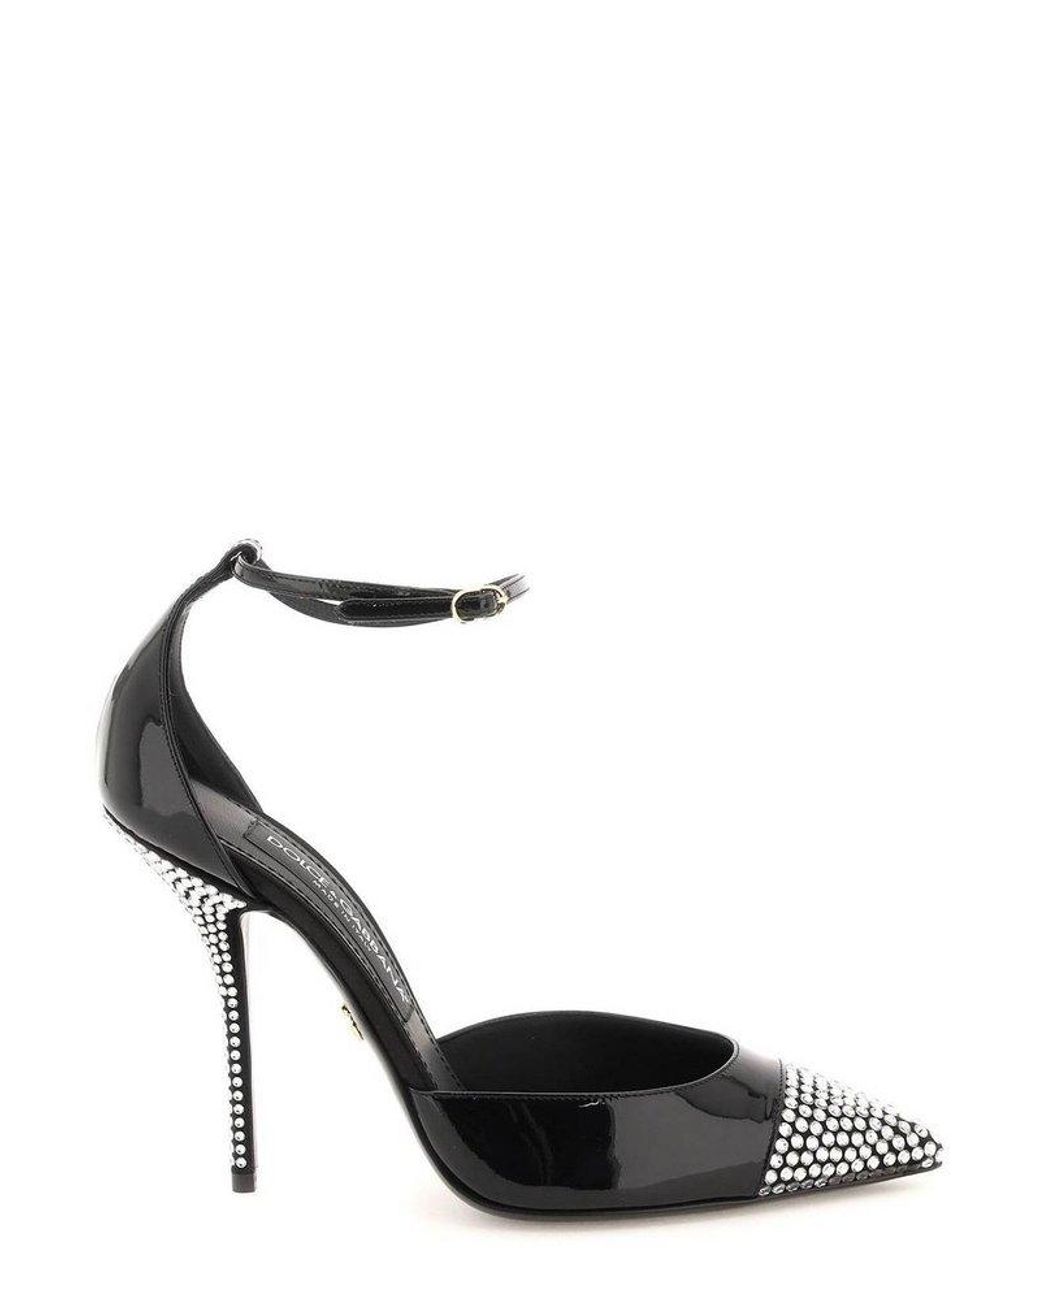 Dolce & Gabbana Embellished Ankle Strap Pumps in Black | Lyst